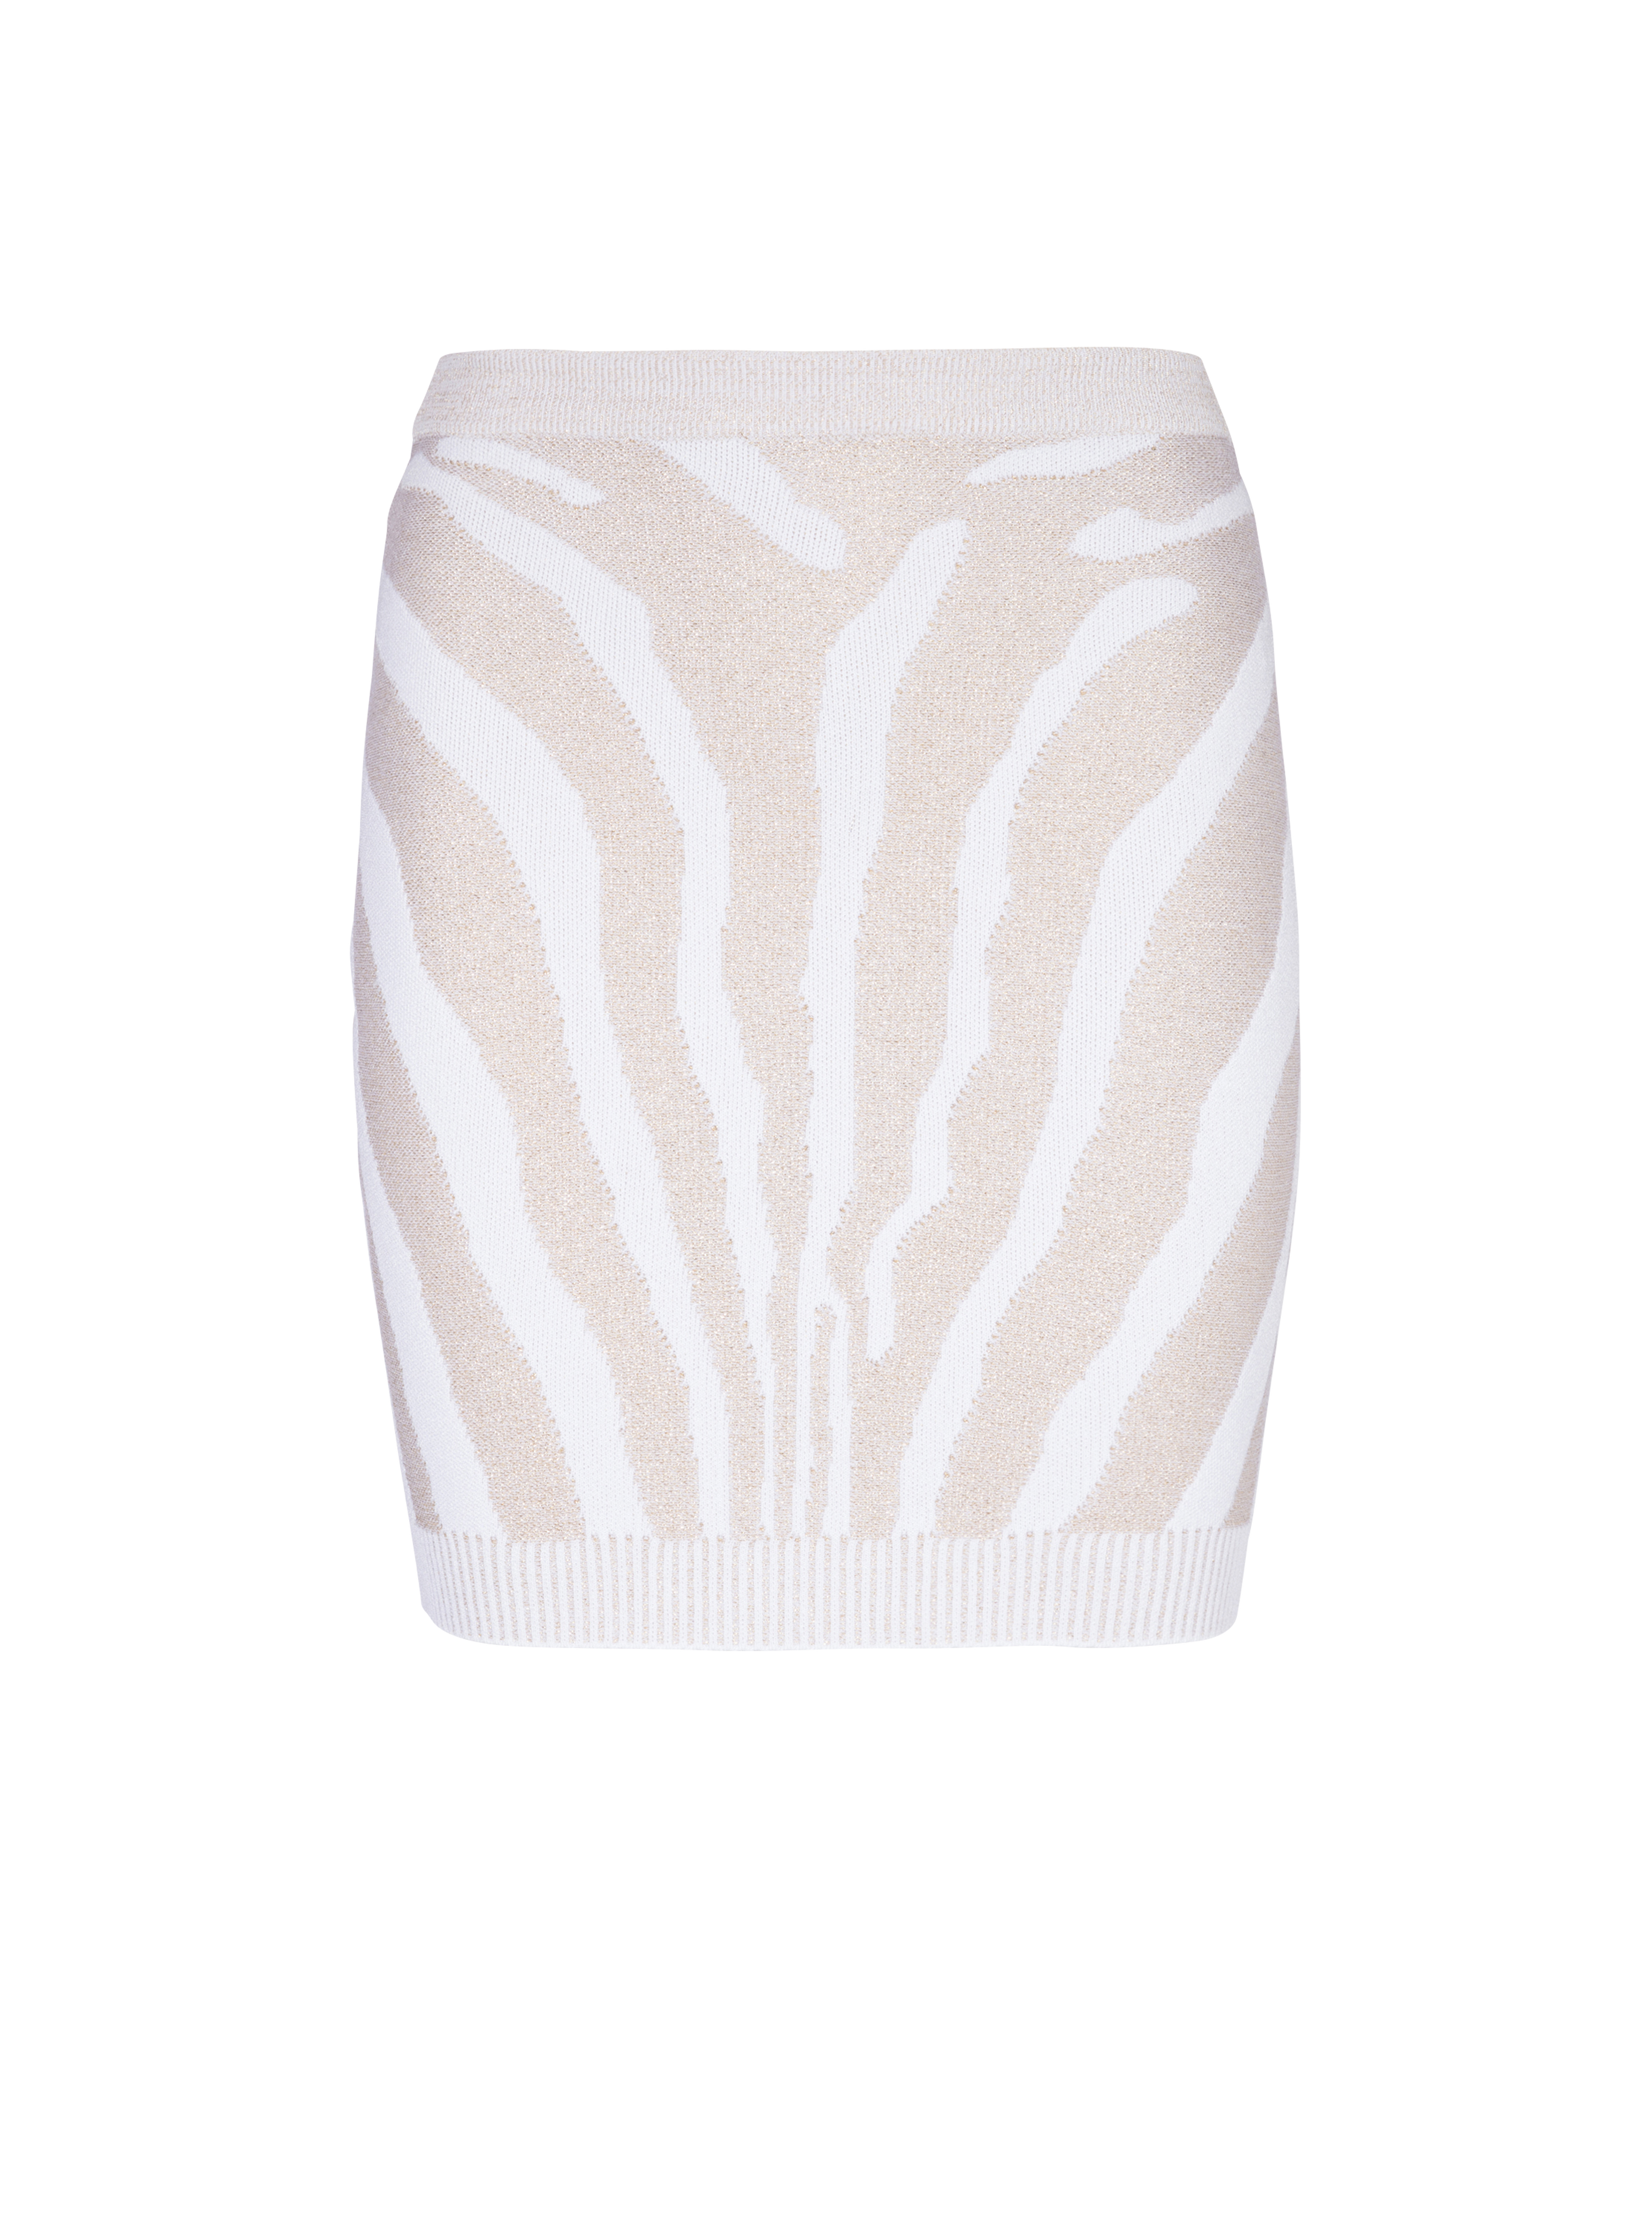 Zebra knit short skirt, white